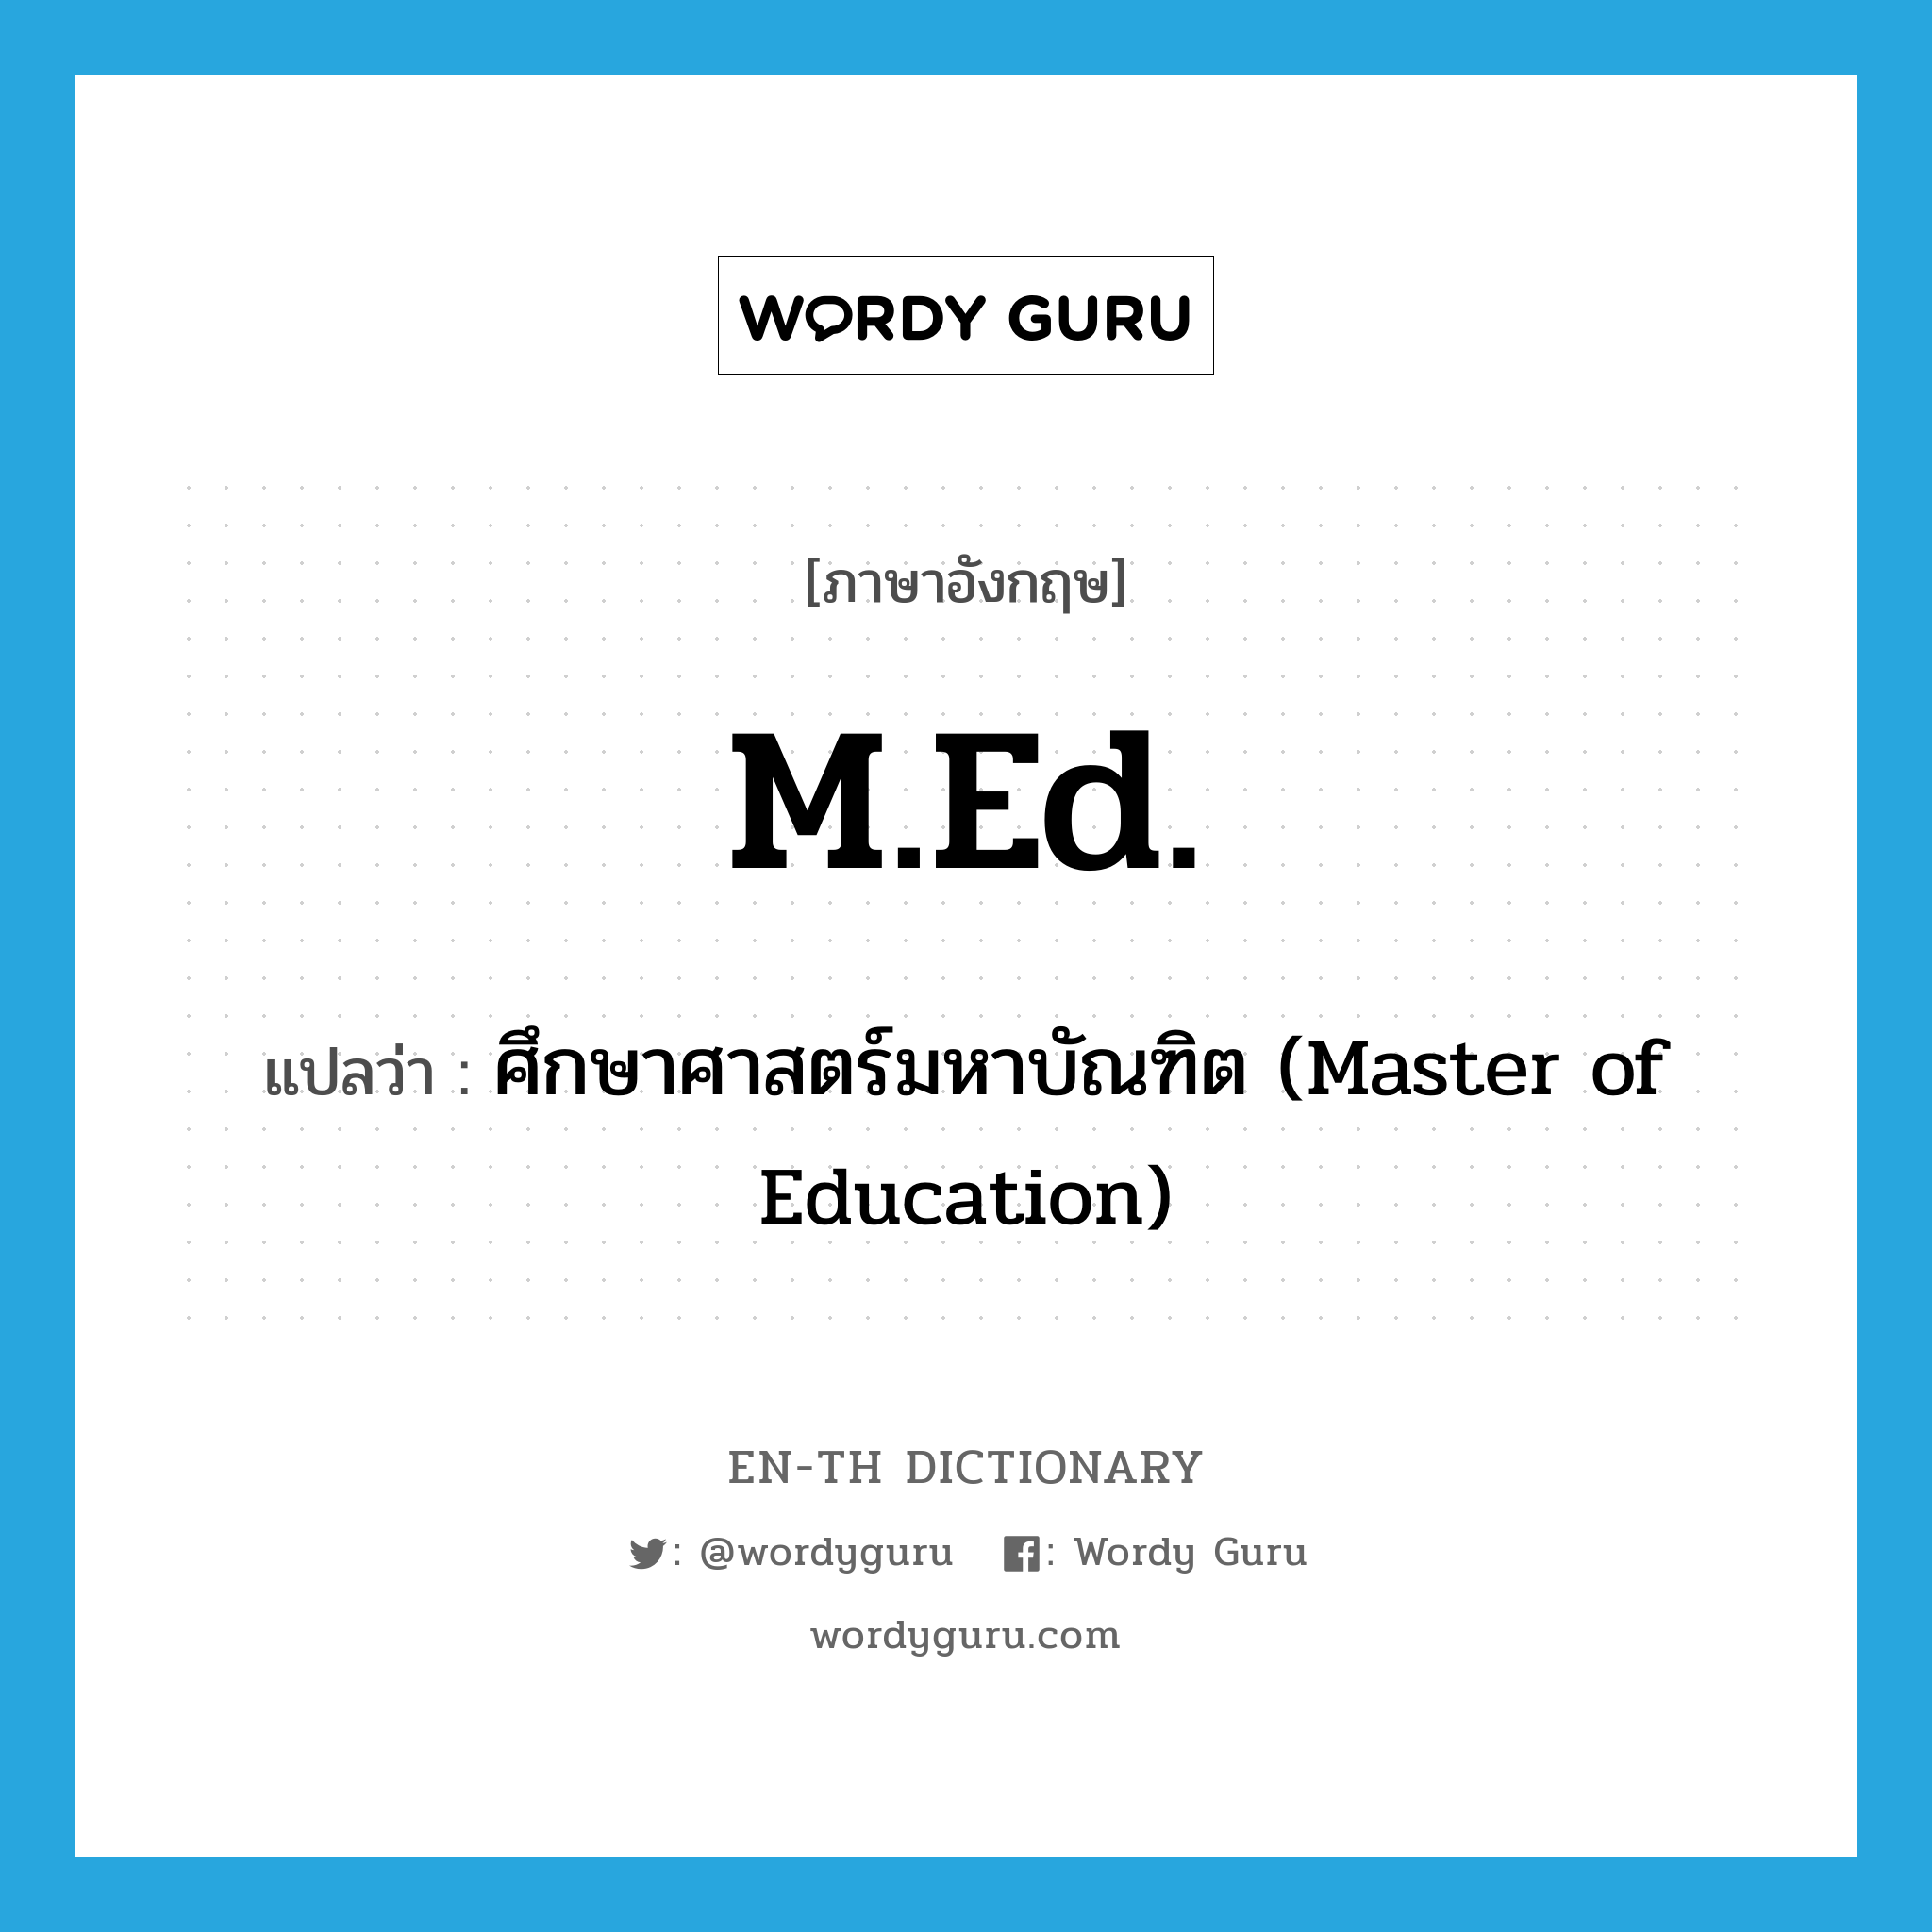 ศึกษาศาสตร์มหาบัณฑิต (Master of Education) ภาษาอังกฤษ?, คำศัพท์ภาษาอังกฤษ ศึกษาศาสตร์มหาบัณฑิต (Master of Education) แปลว่า M.Ed. ประเภท ABBR หมวด ABBR